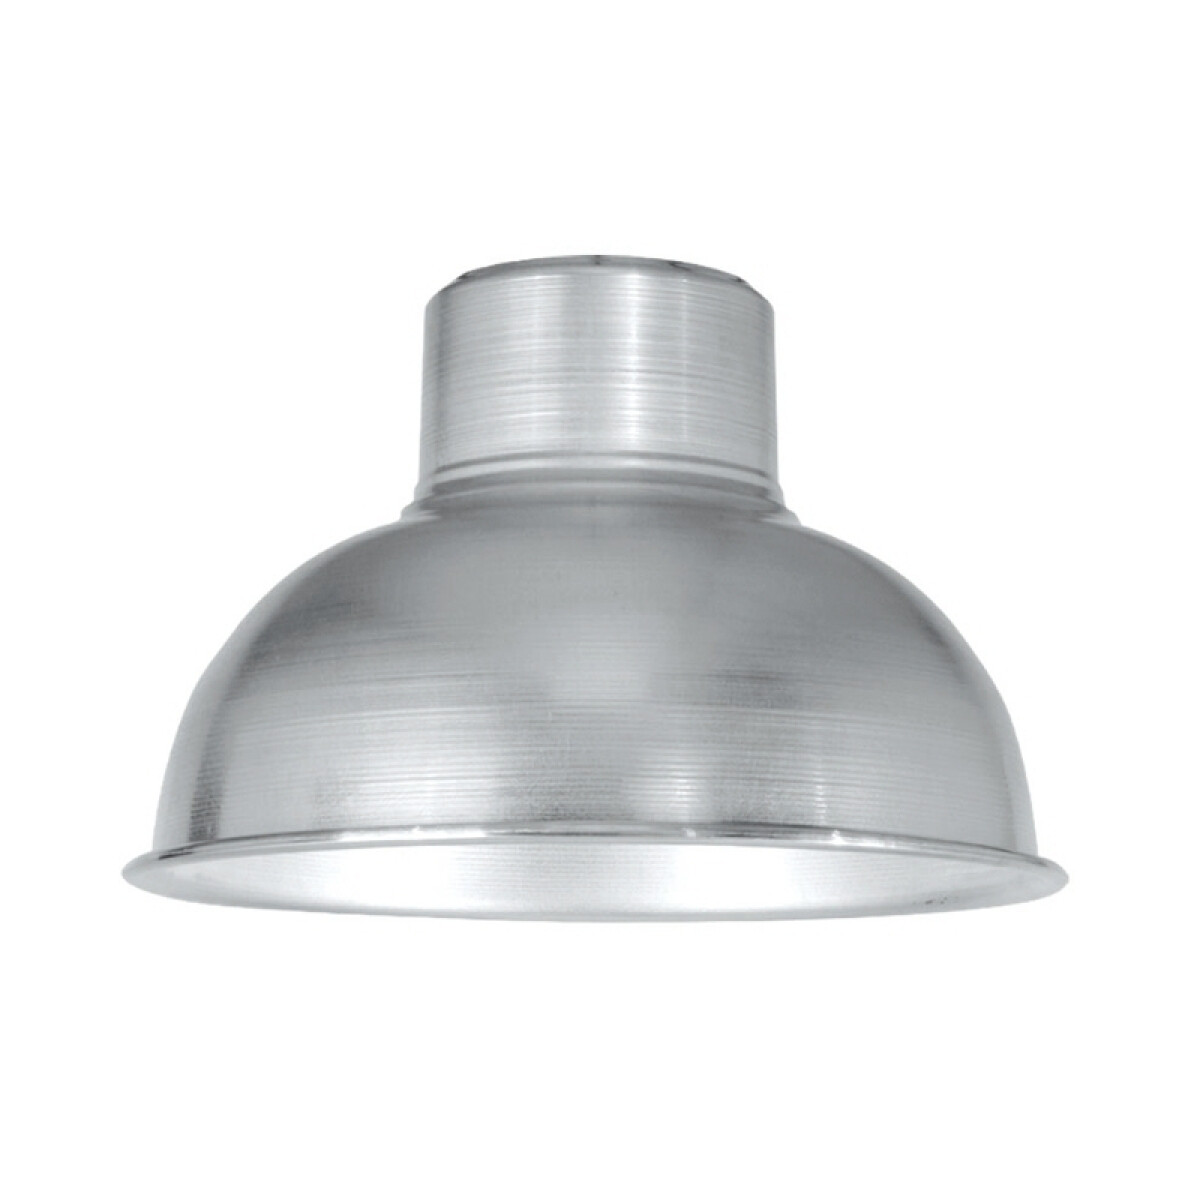 Colgante vacío campana en aluminio, Ø35cm - JU0308 